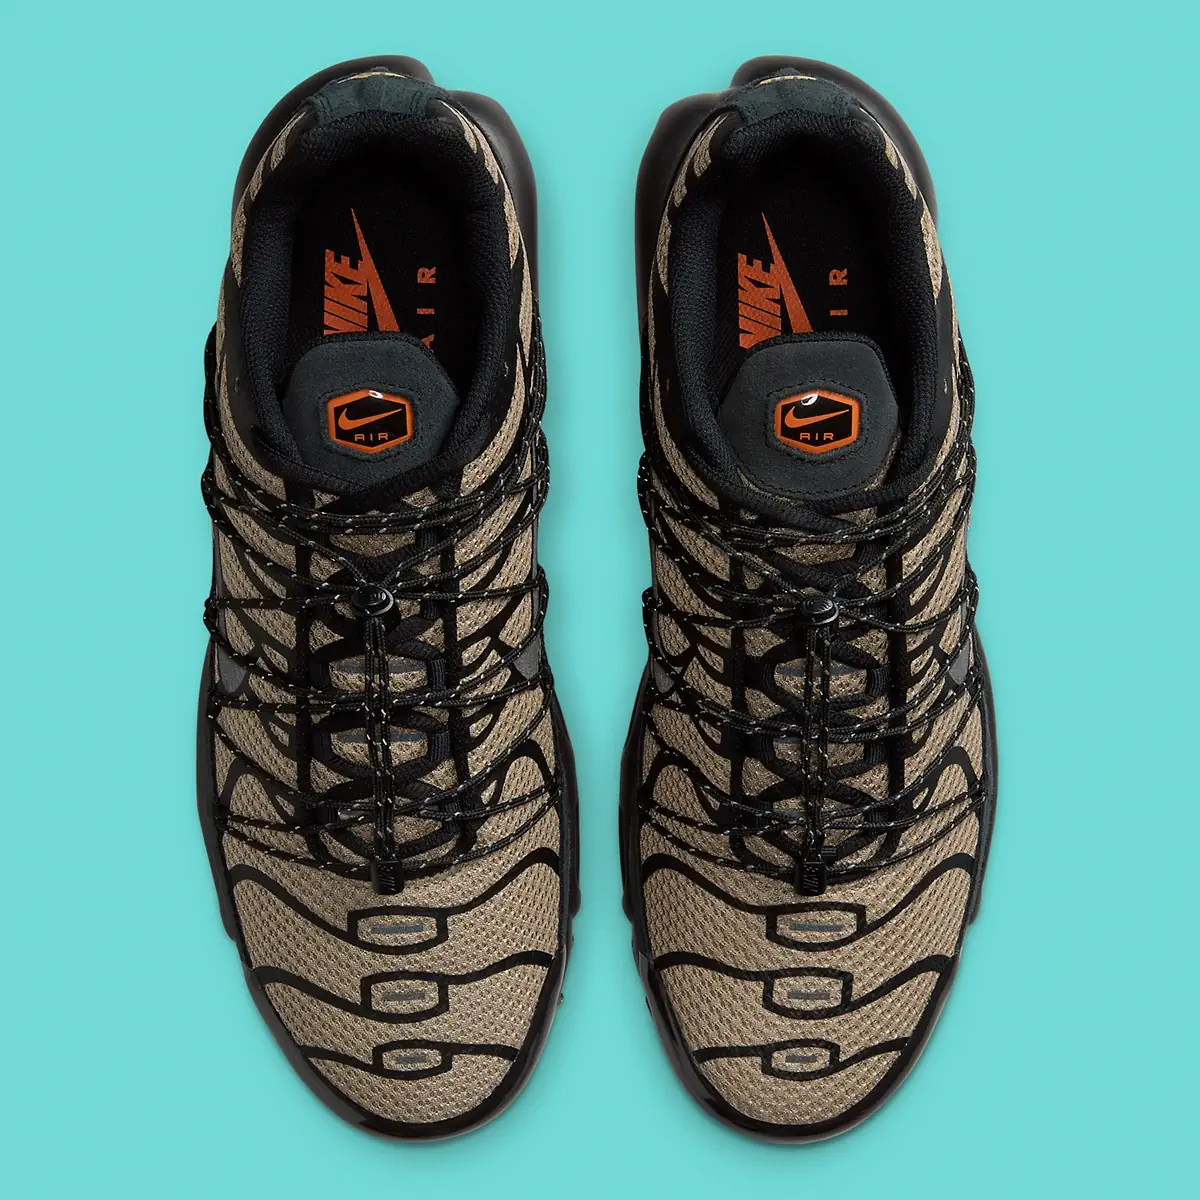 Nike Air Max Plus Utility “Tan/Black”, le visage familier bénéficie d'une mise à jour fonctionnelle